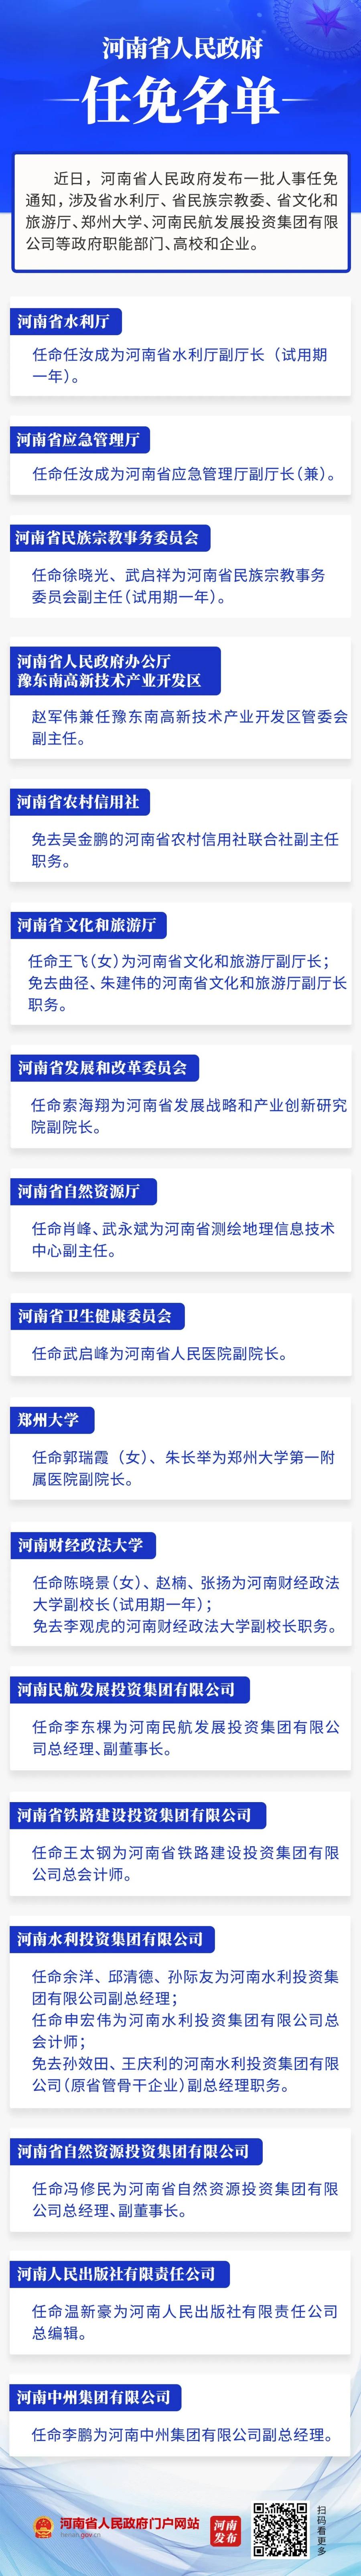 河南省政府新任免一批干部，涉多个政府职能部门和高校、企业